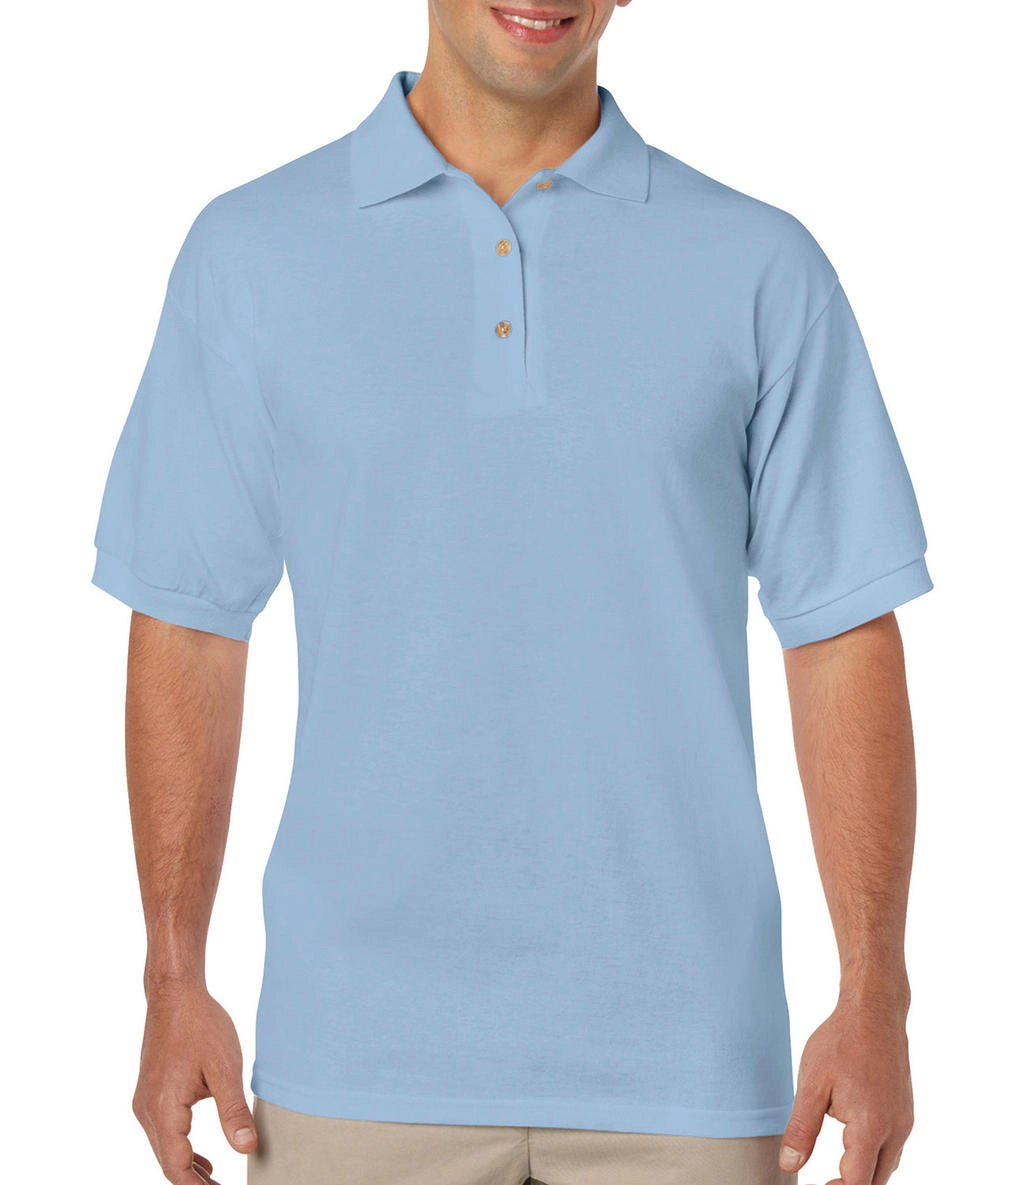 DryBlend Adult Jersey Polo zum Besticken und Bedrucken in der Farbe Light Blue mit Ihren Logo, Schriftzug oder Motiv.